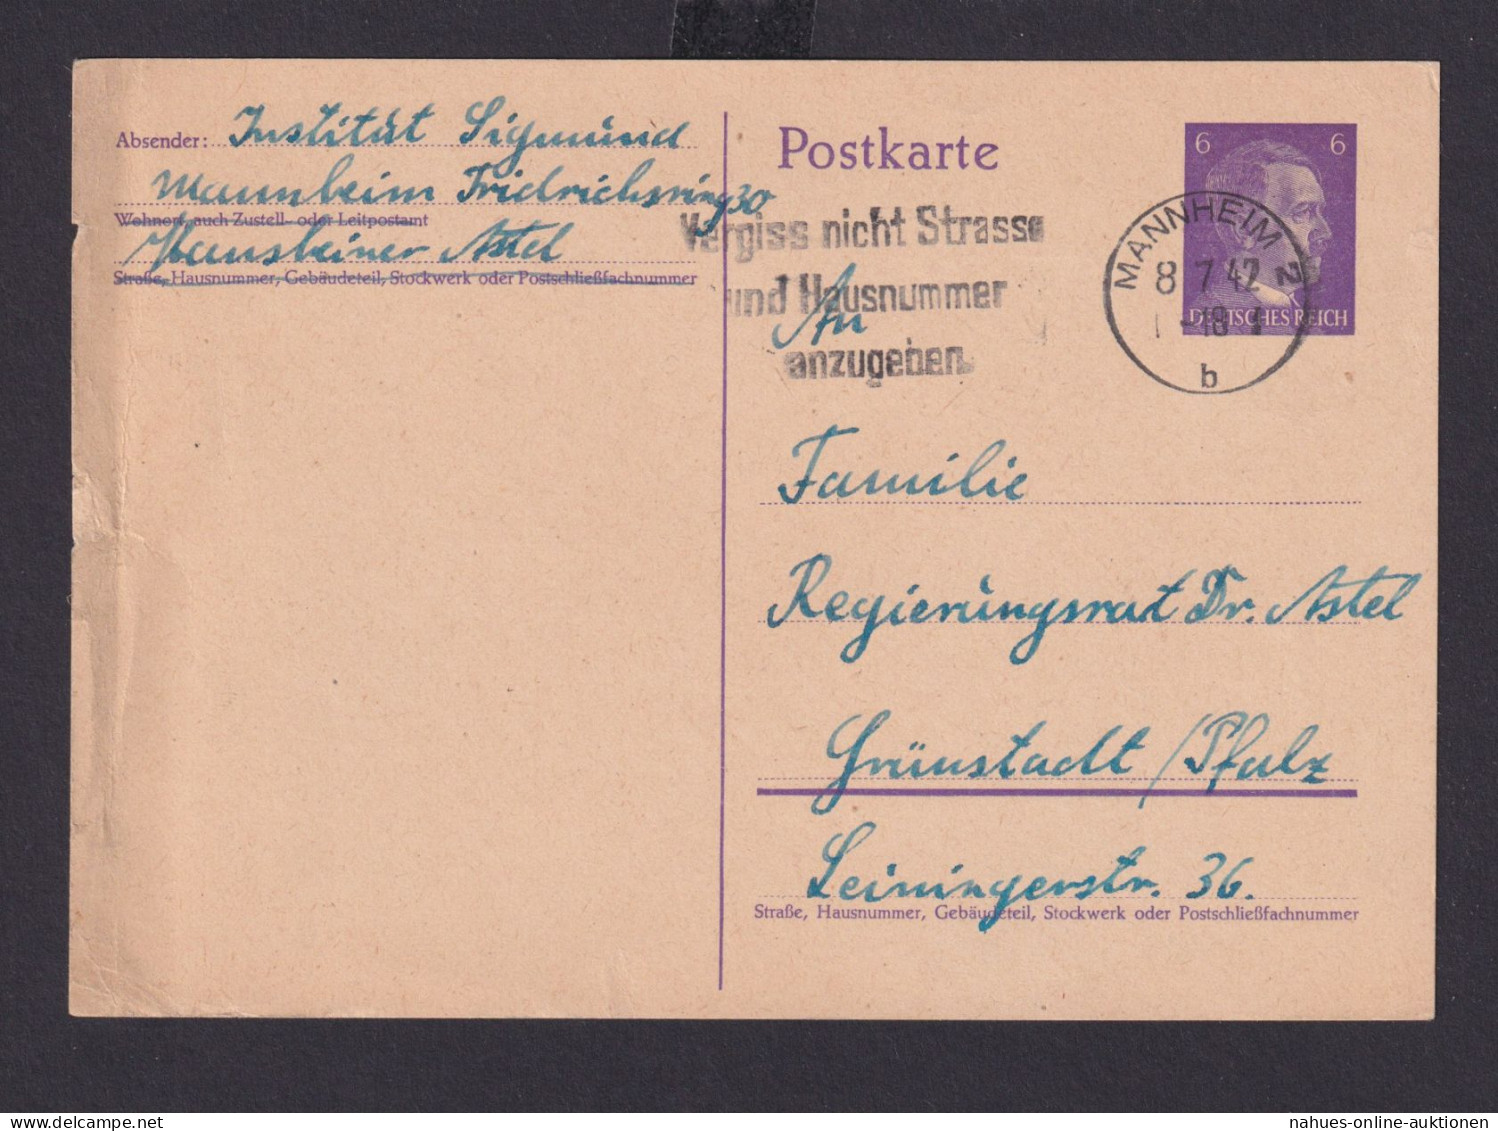 Ganzsache Mannheim Baden Württemberg Deutsches Reich Drittes Reich Karte - Covers & Documents